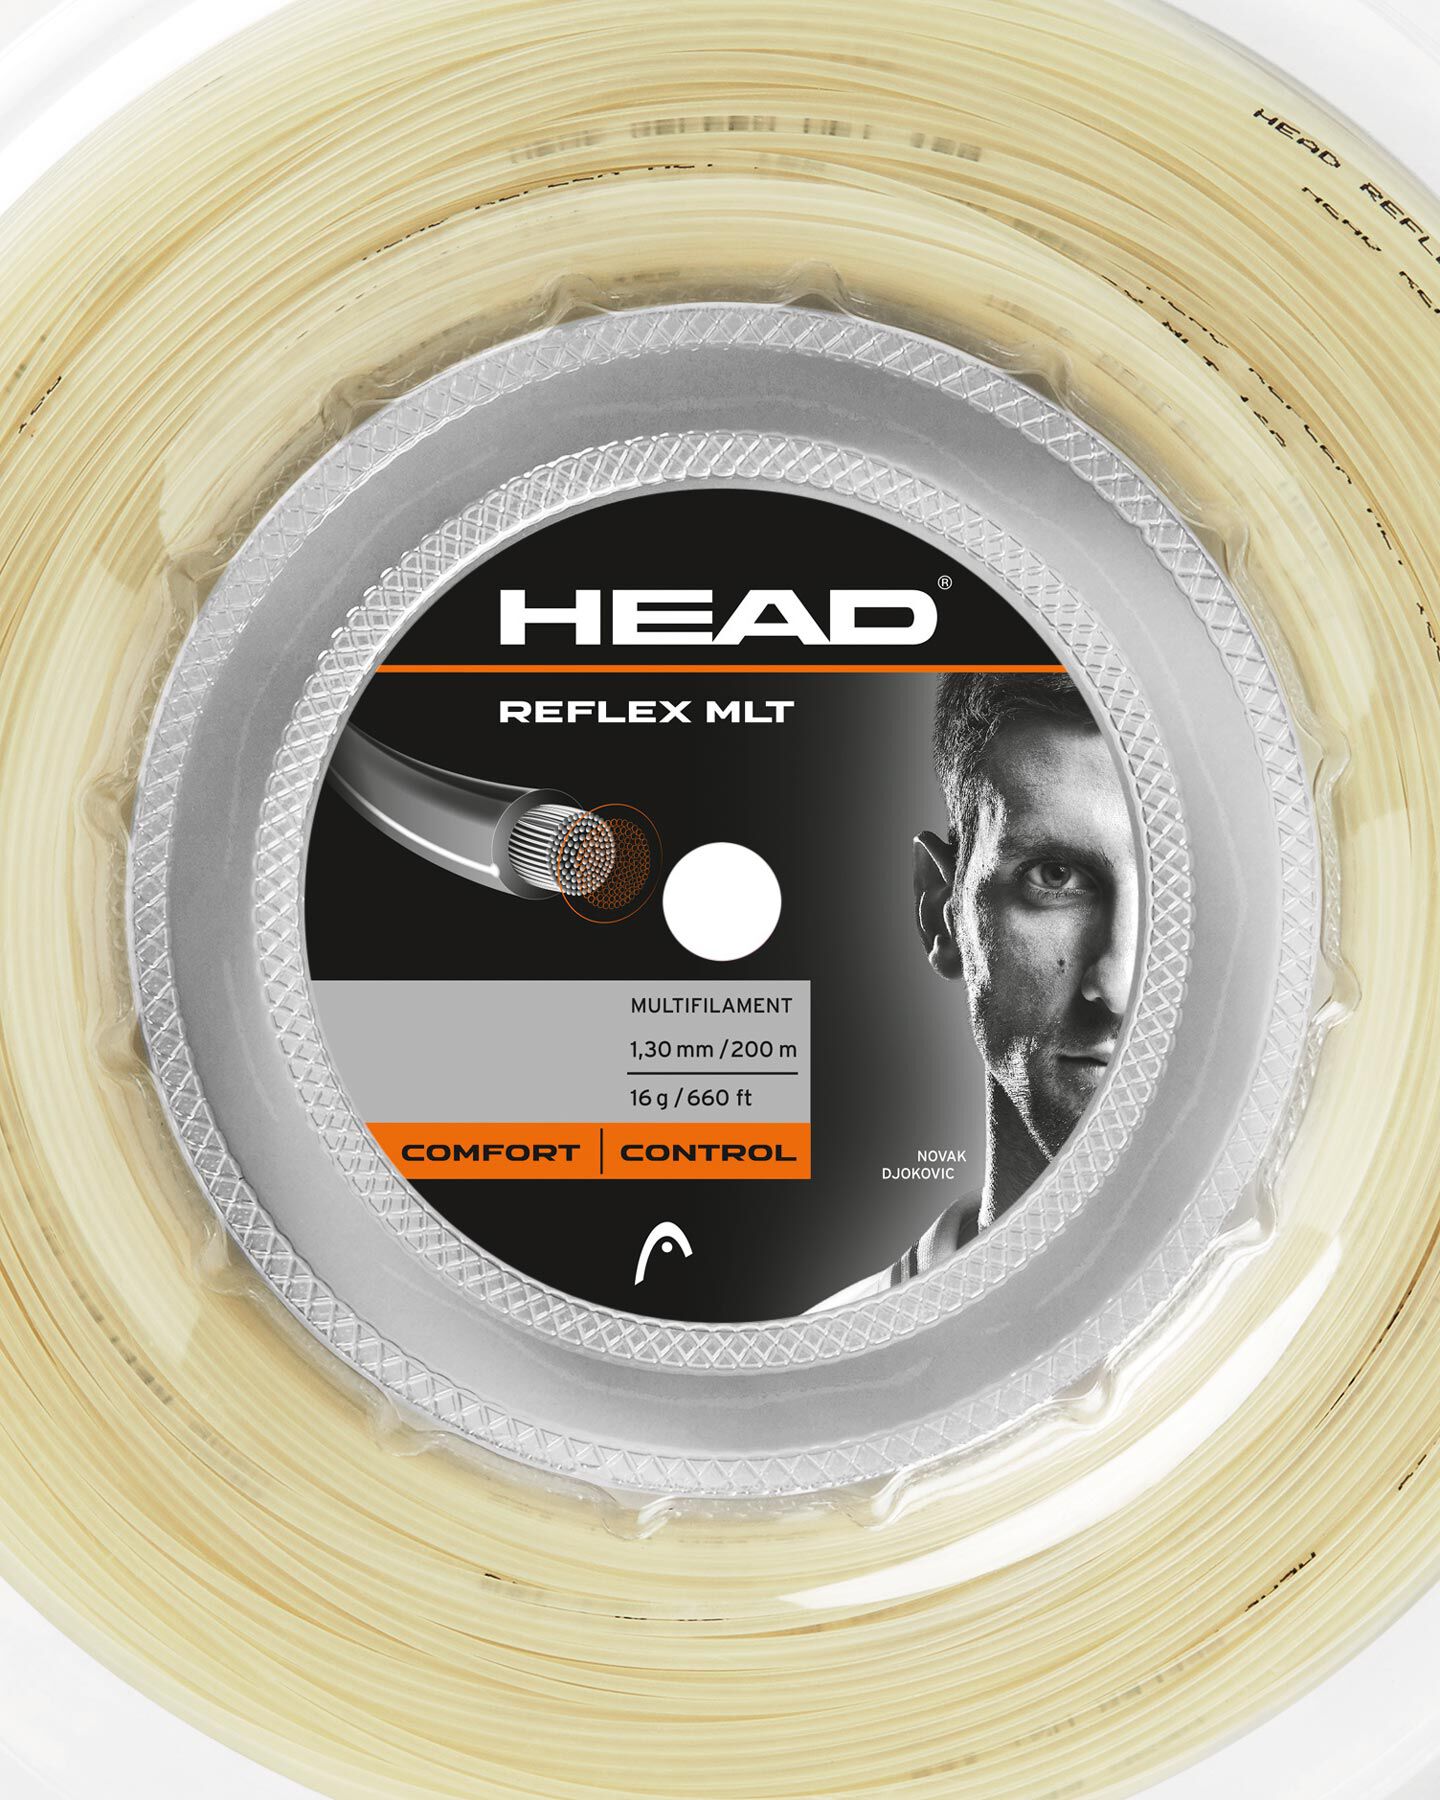  Corde tennis HEAD REFLEX MLT S4002998|NAT|1,30 scatto 1